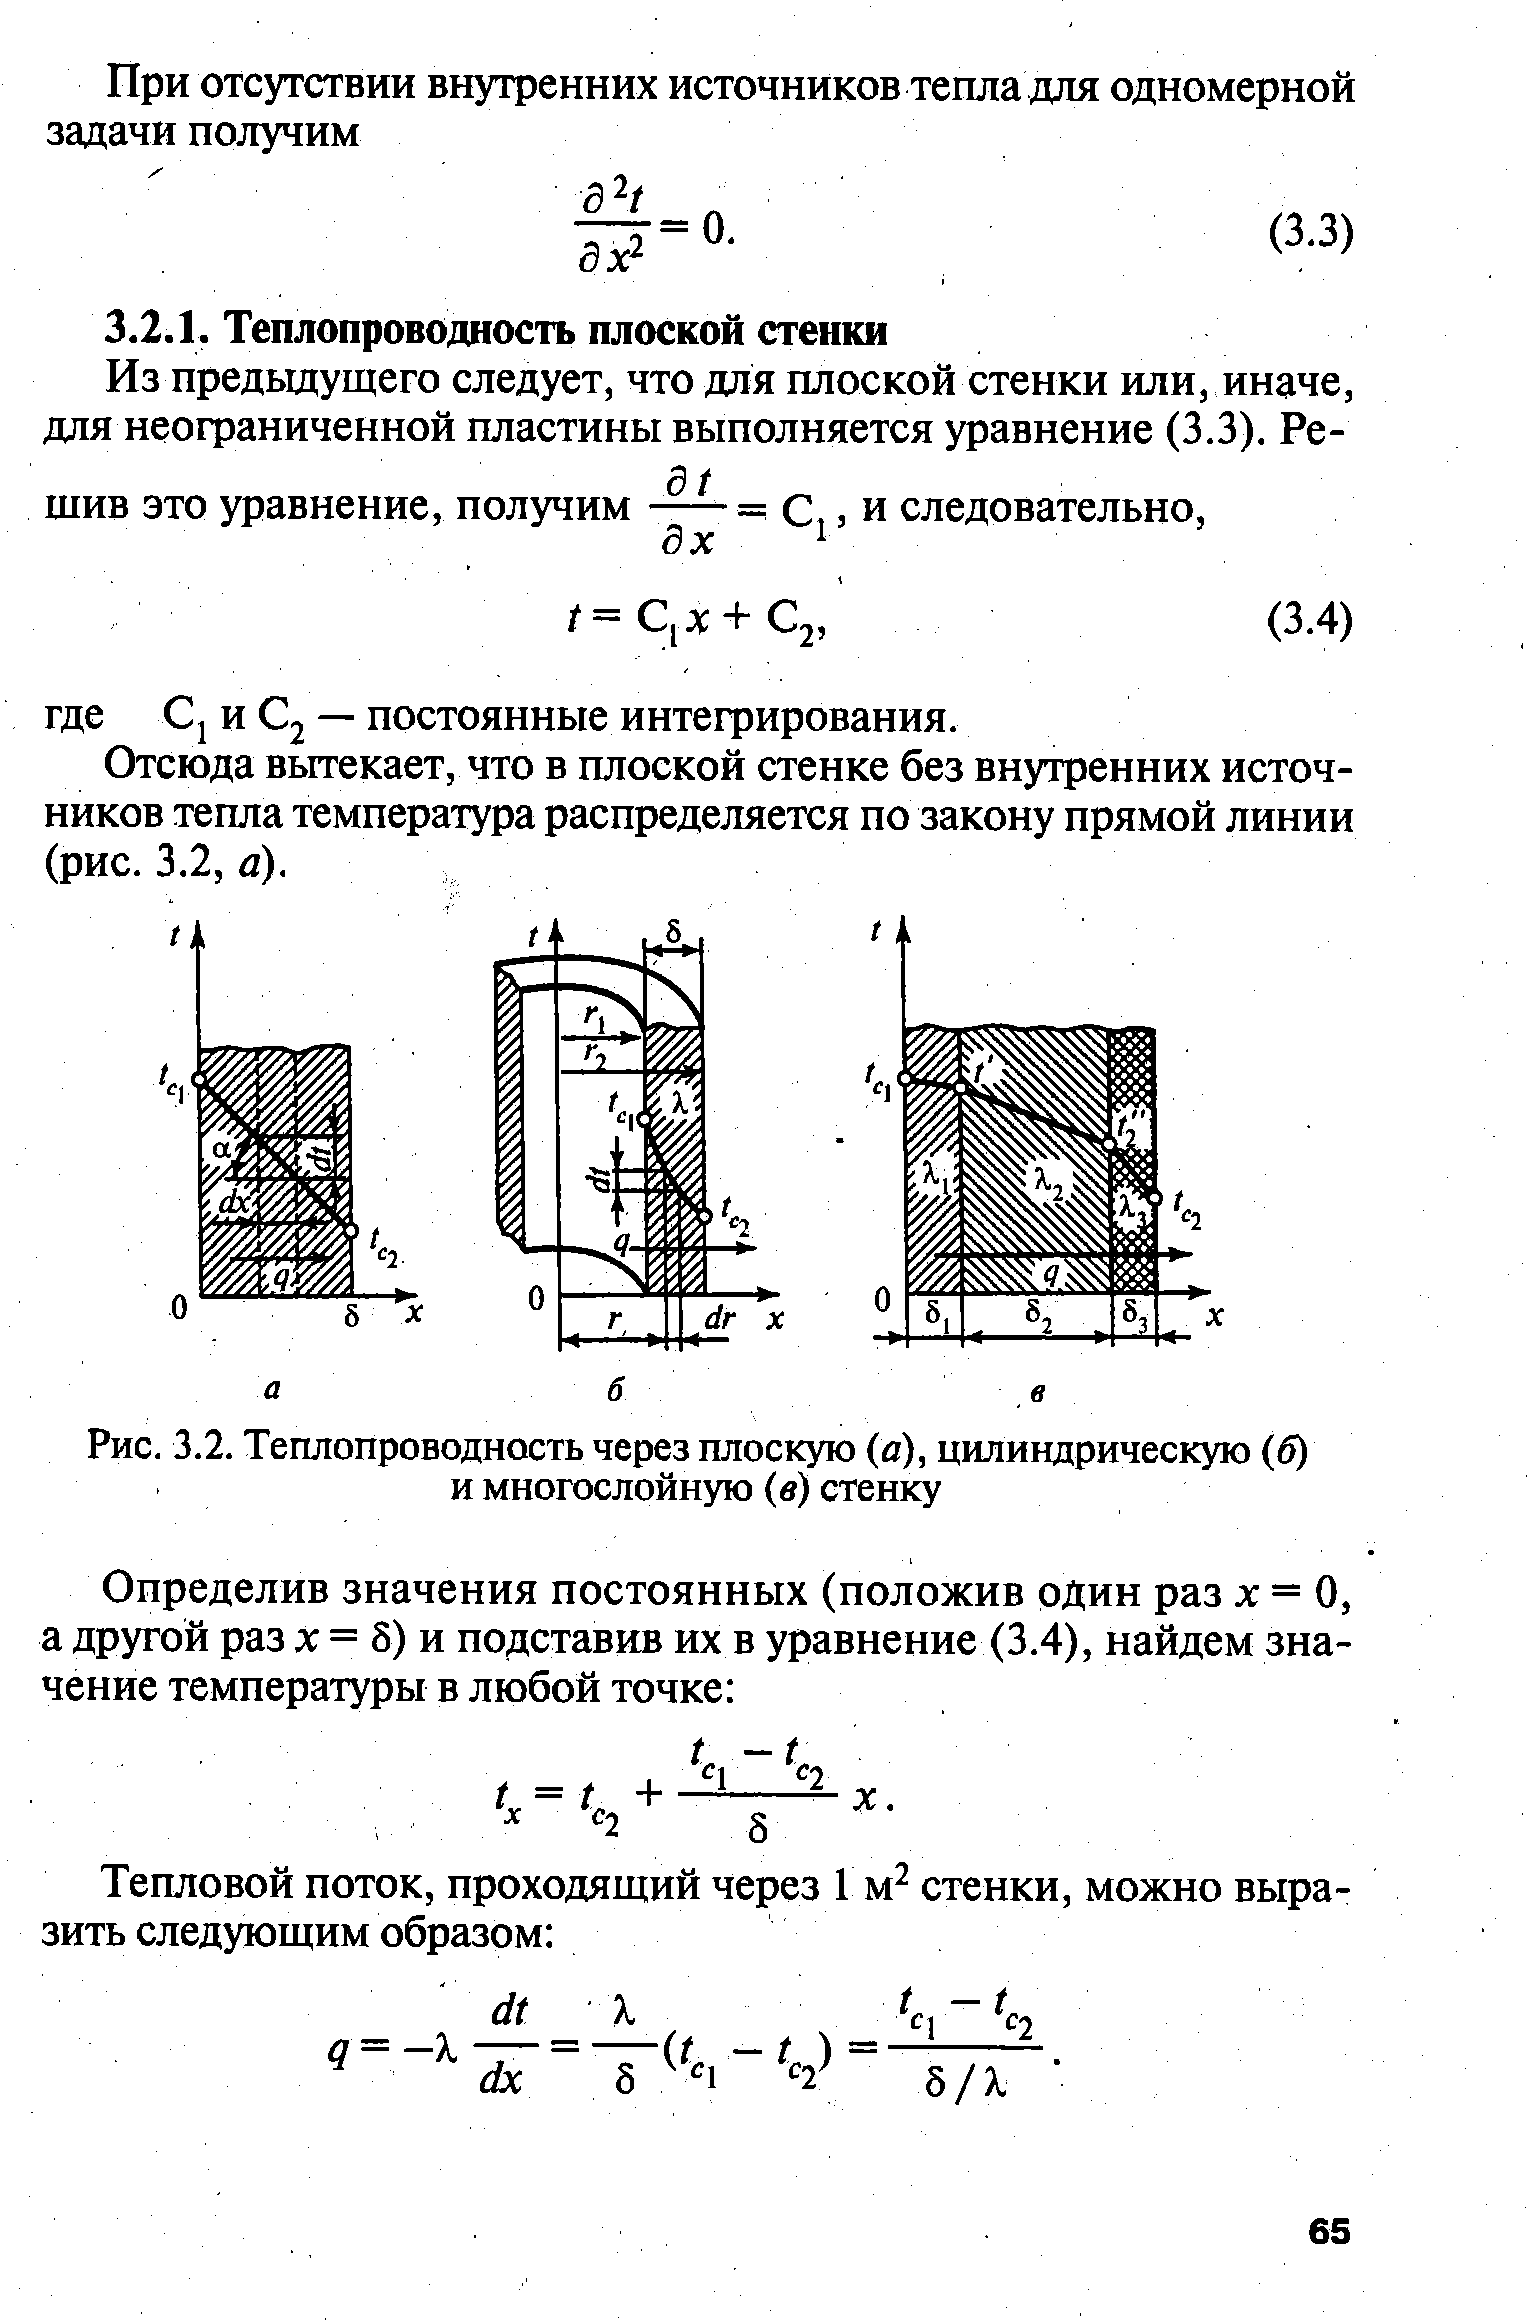 Рис. 3.2. Теплопроводность через плоскую (а), цилиндрическую (б) и многослойную (в) стенку
